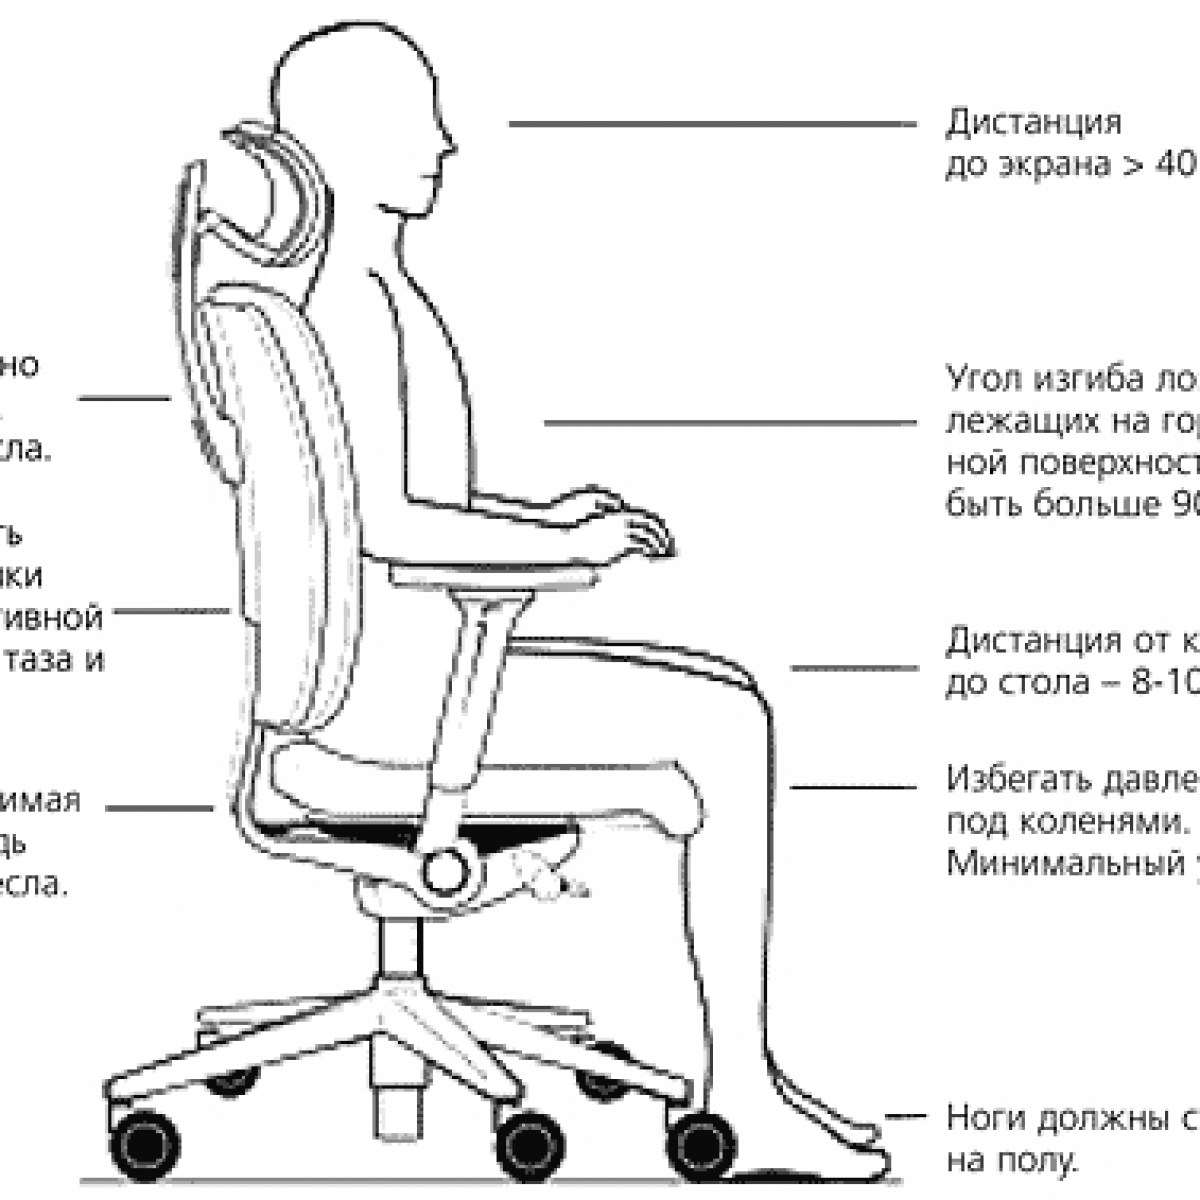 Стул болит поясница. Как выбрать высоту спинки компьютерного кресла. Правильная эргономика кресла. Стул для офиса эргономика. Эргономика компьютерного кресла.